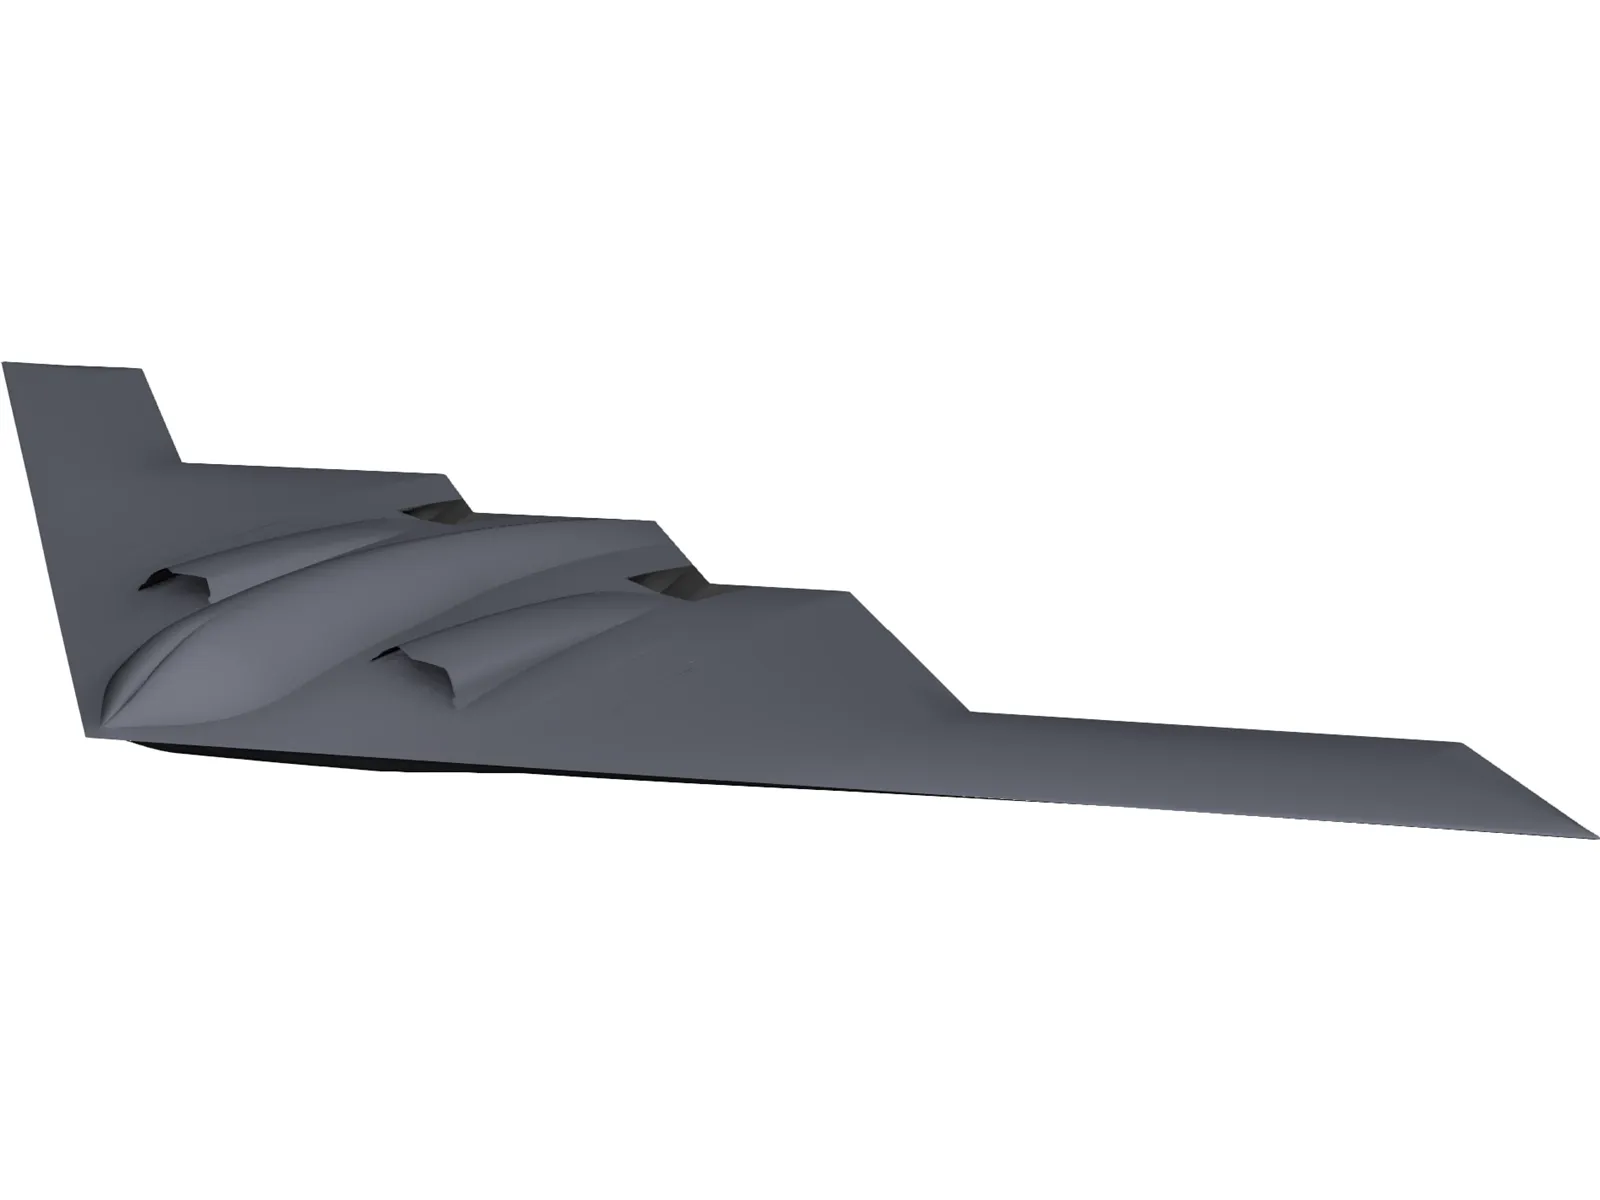 B-2 Spirit Bomber 3D Model